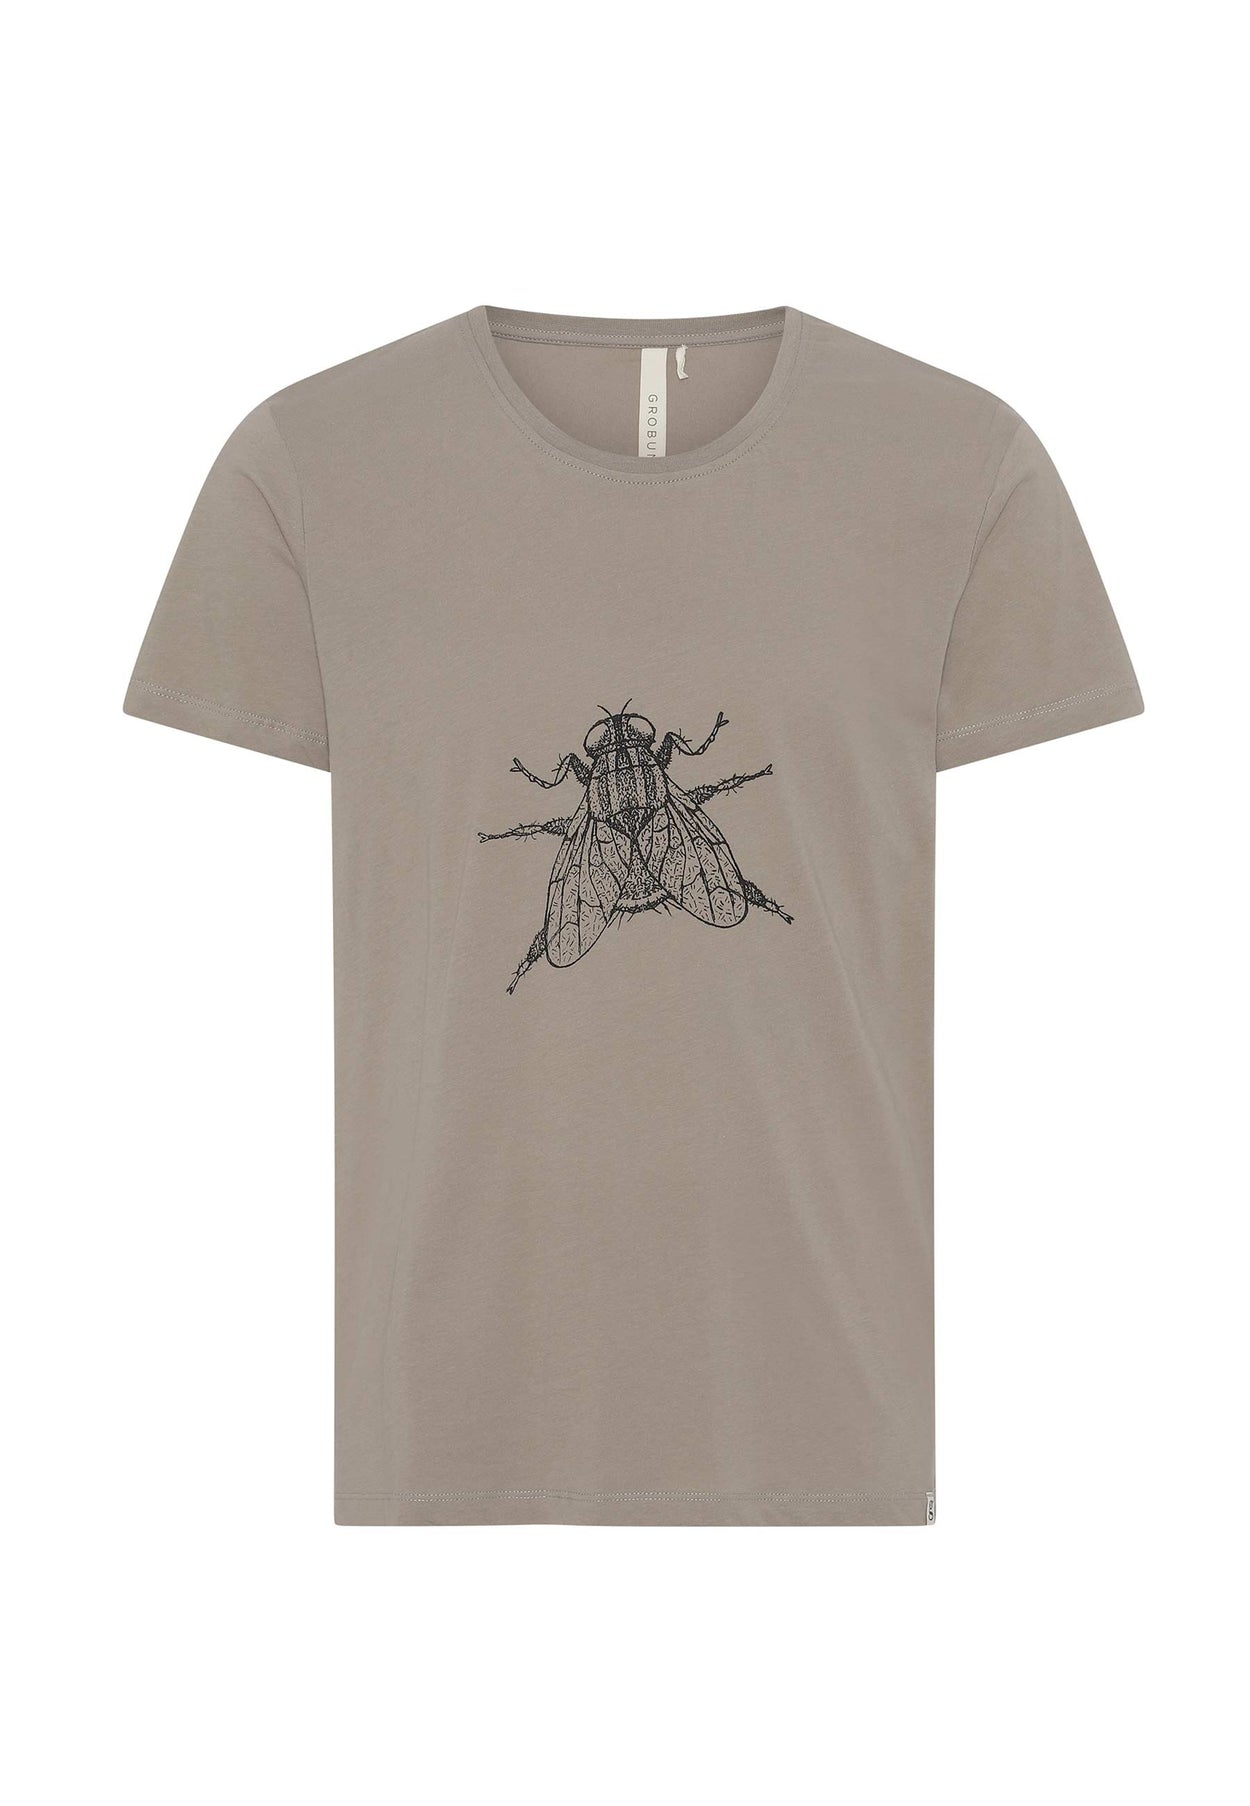 GROBUND Manfred t-shirten - den med flue i moler